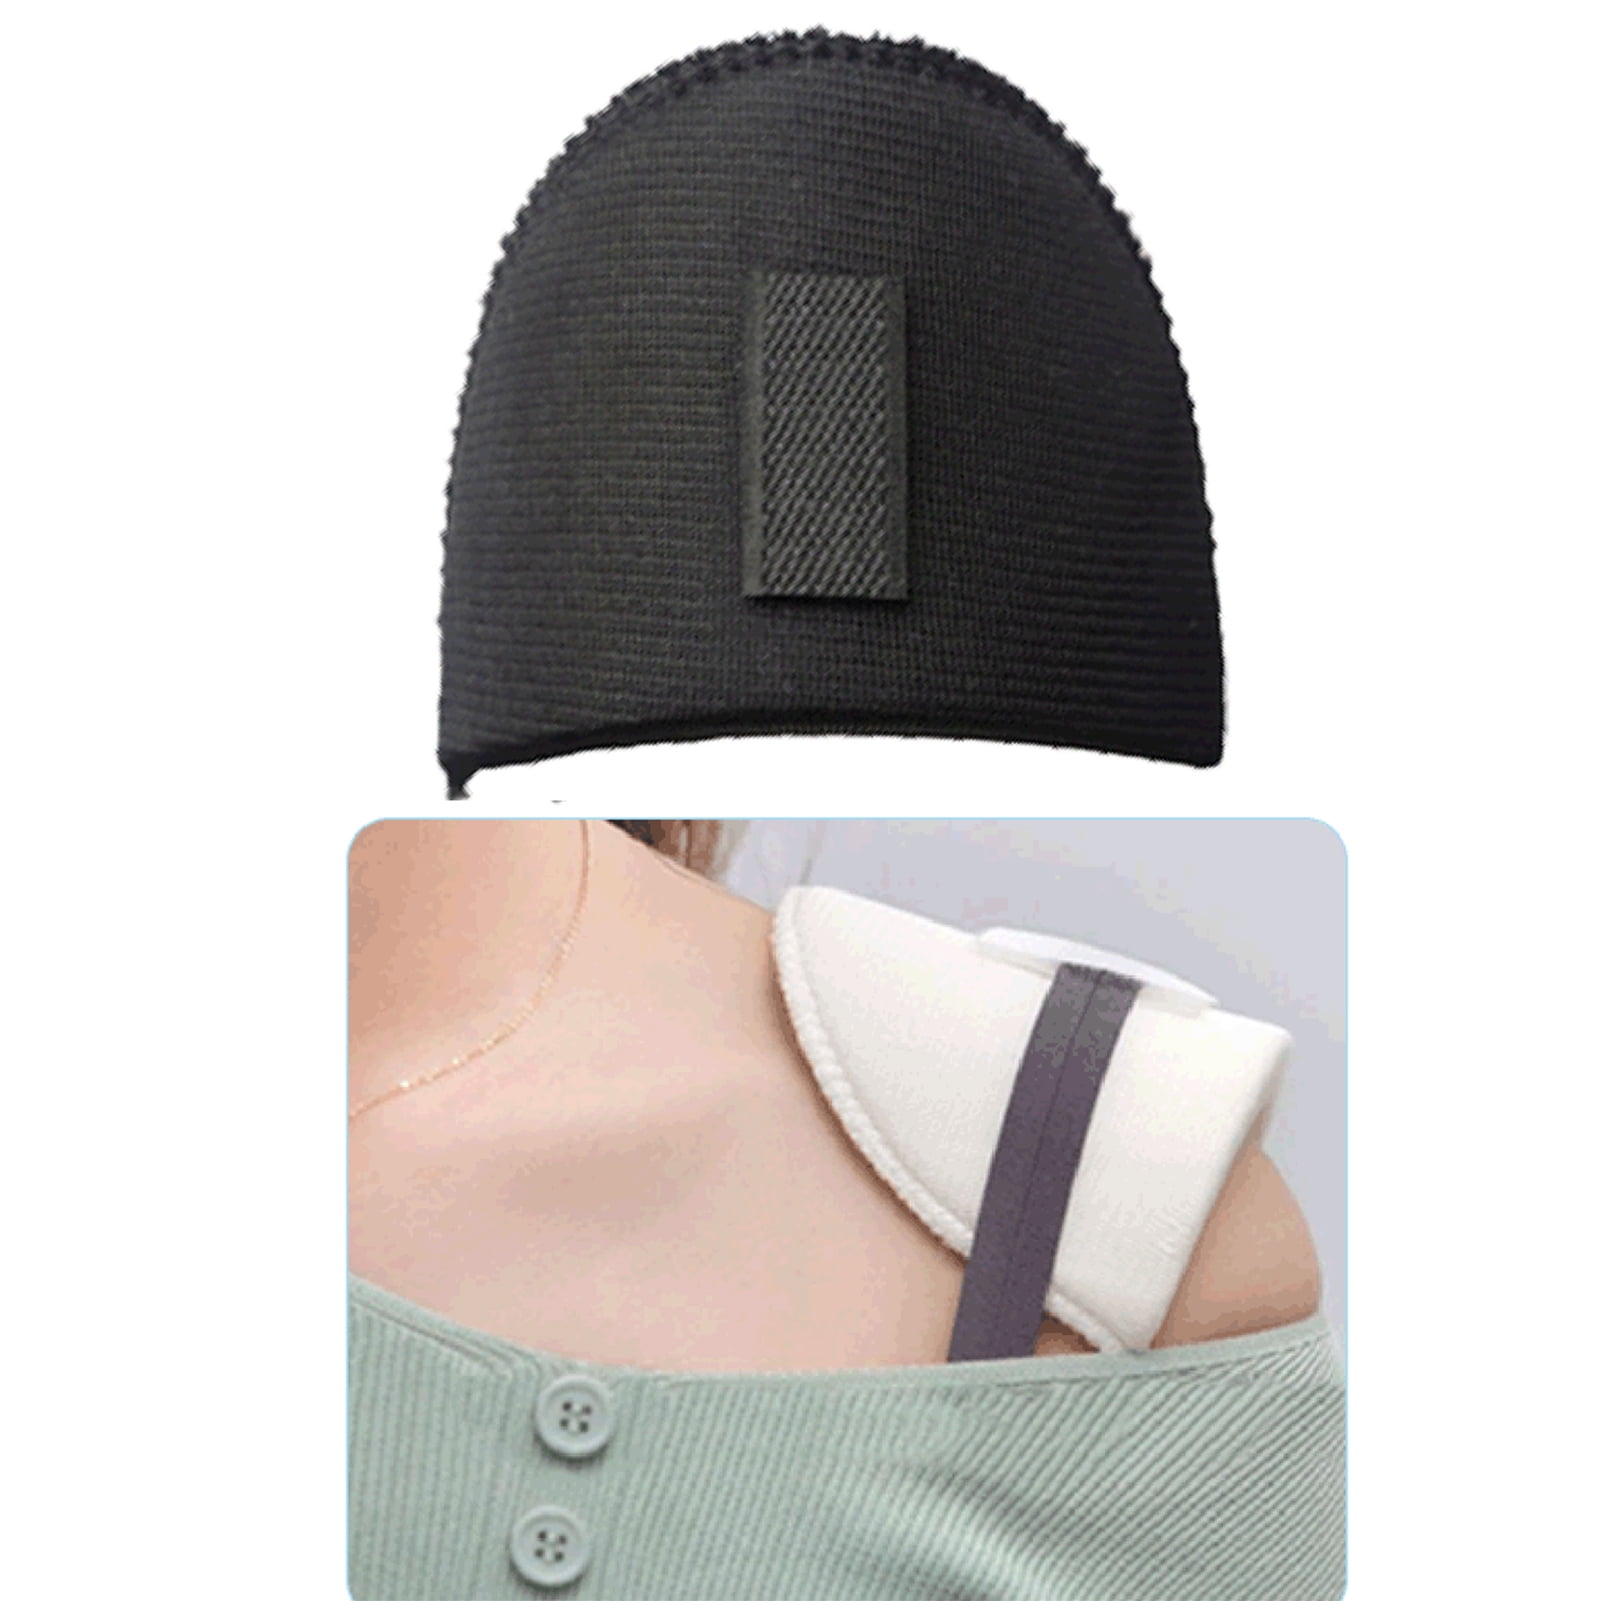 Travelwant Shoulder Pads Non Slip Sponge Shoulder Pads Soft Shoulder  Protectors Bra Strap Holder Cushions for Women 